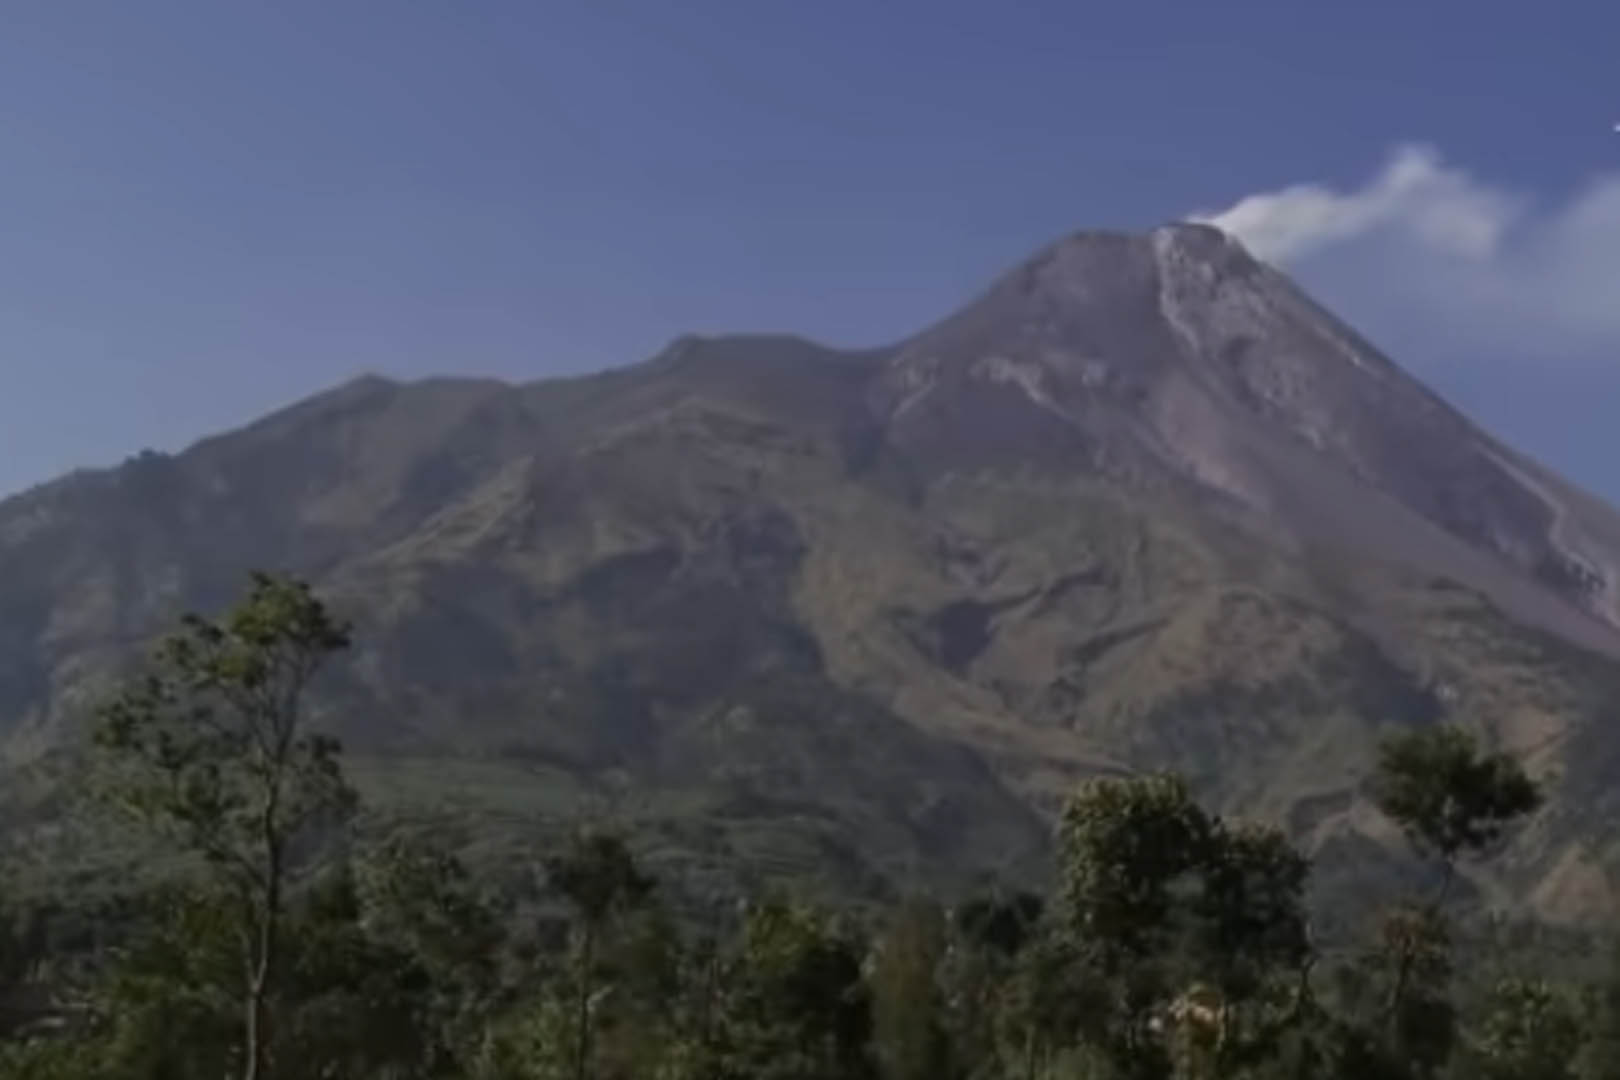 Misteri Dan Asal-Usul Gunung Merapi, Yuk Simak Agar Kamu Mengetahui